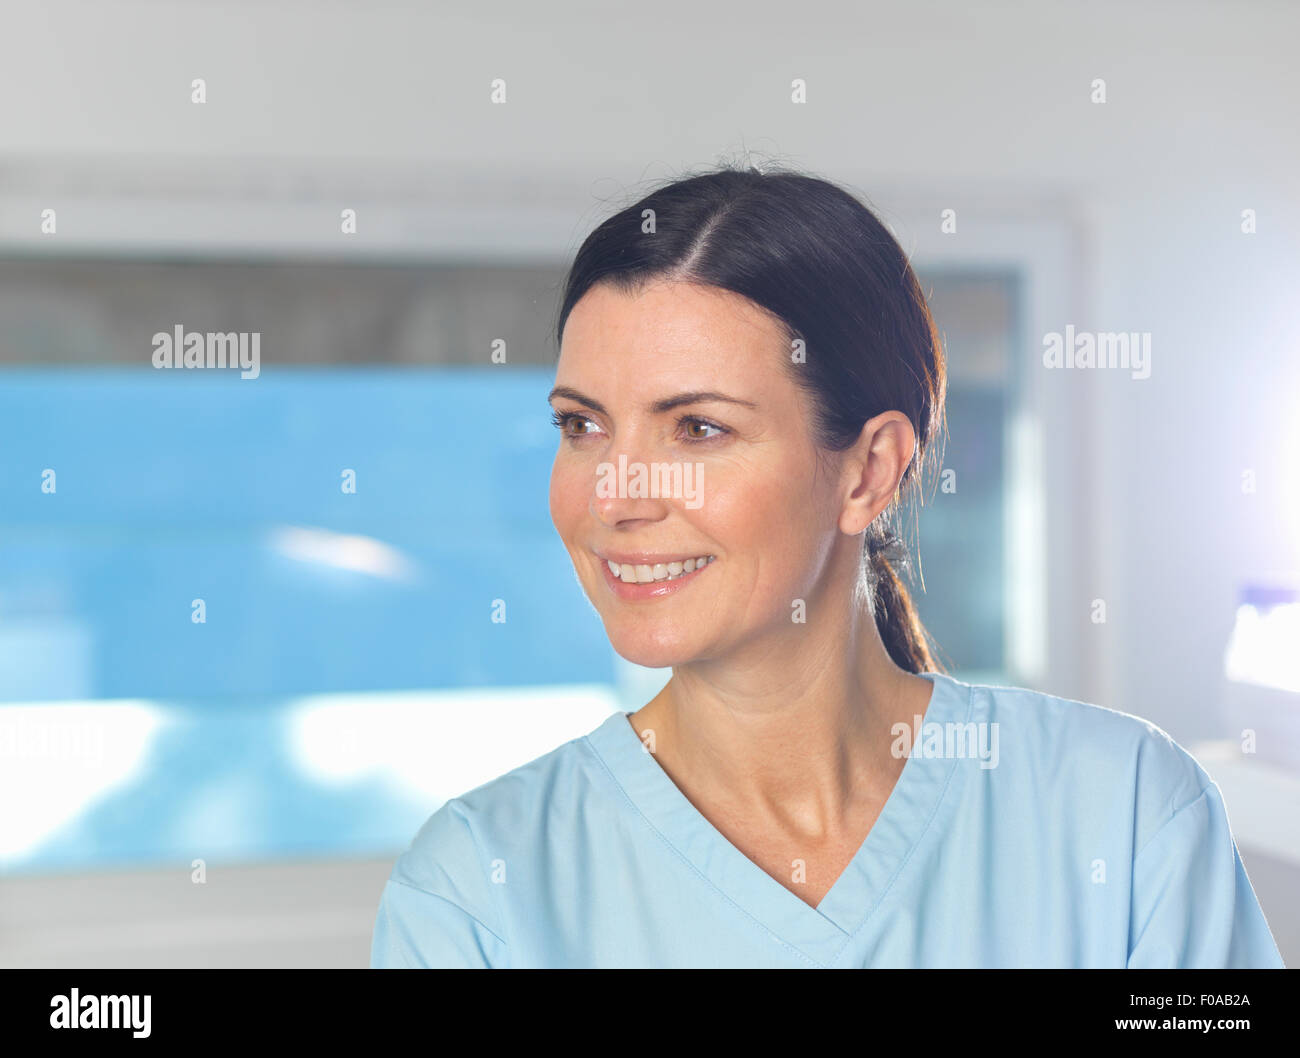 Lavoratore di salute sul lavoro, finestra in background. Foto Stock